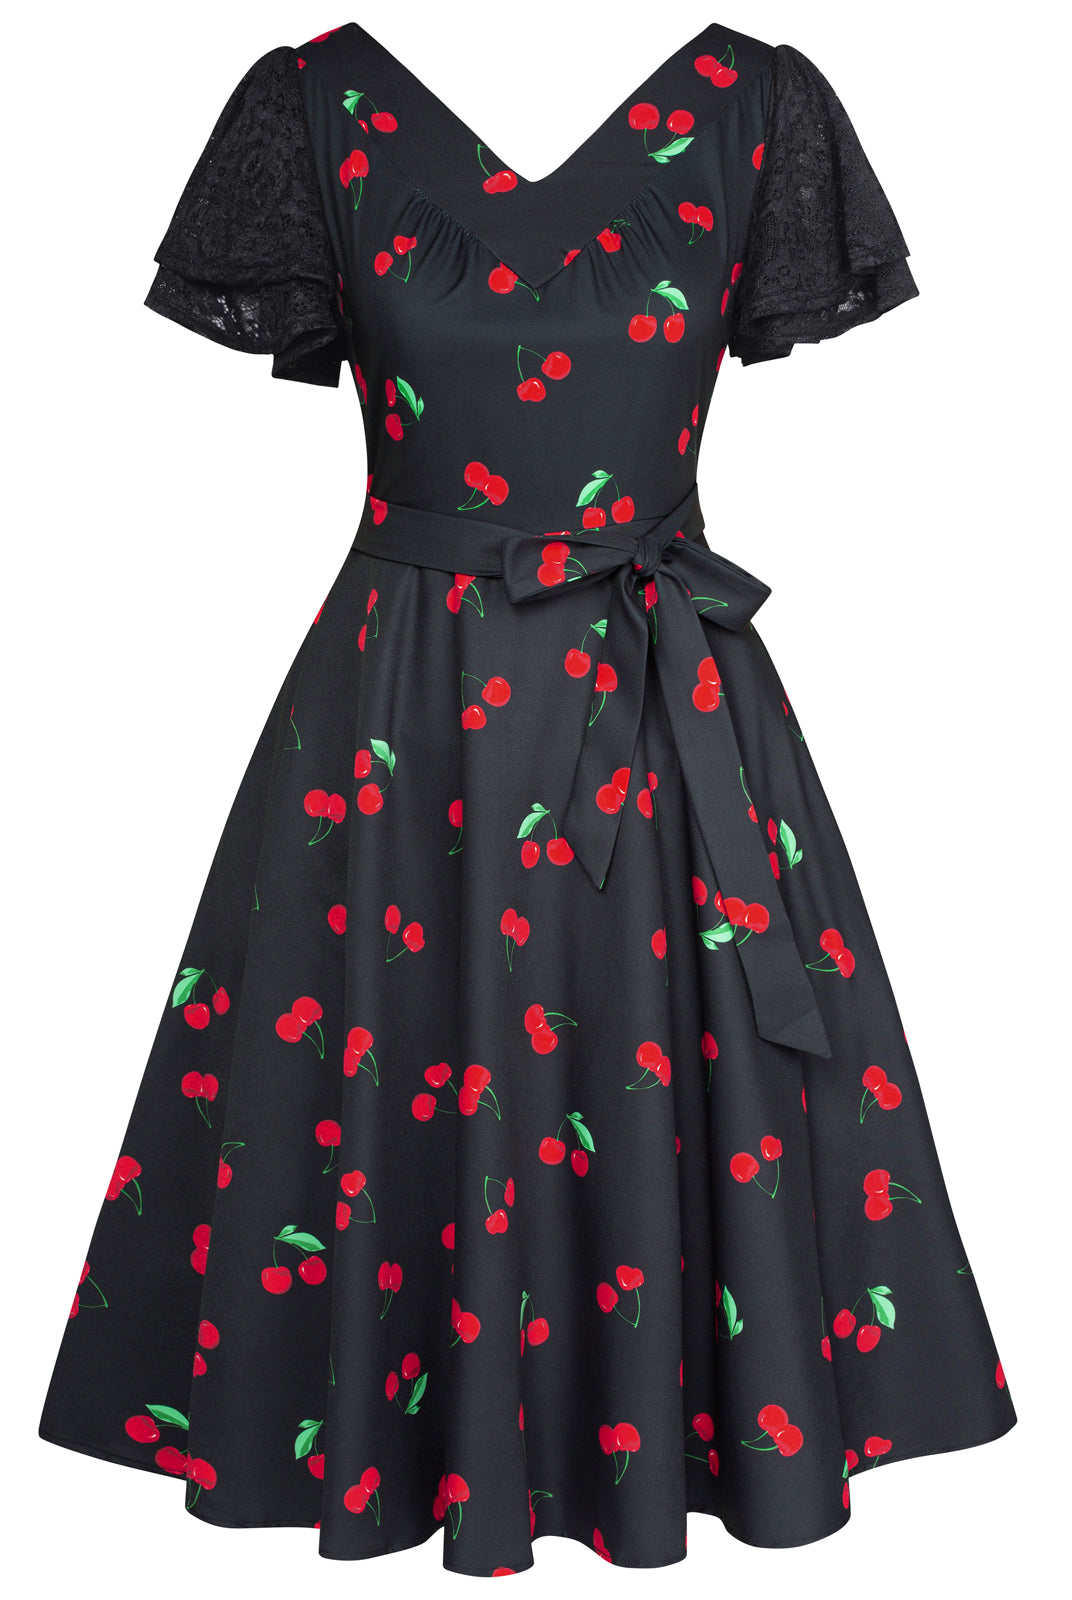 Summer Short Puff Sleeve Cherry Patterns Cocktail Dress